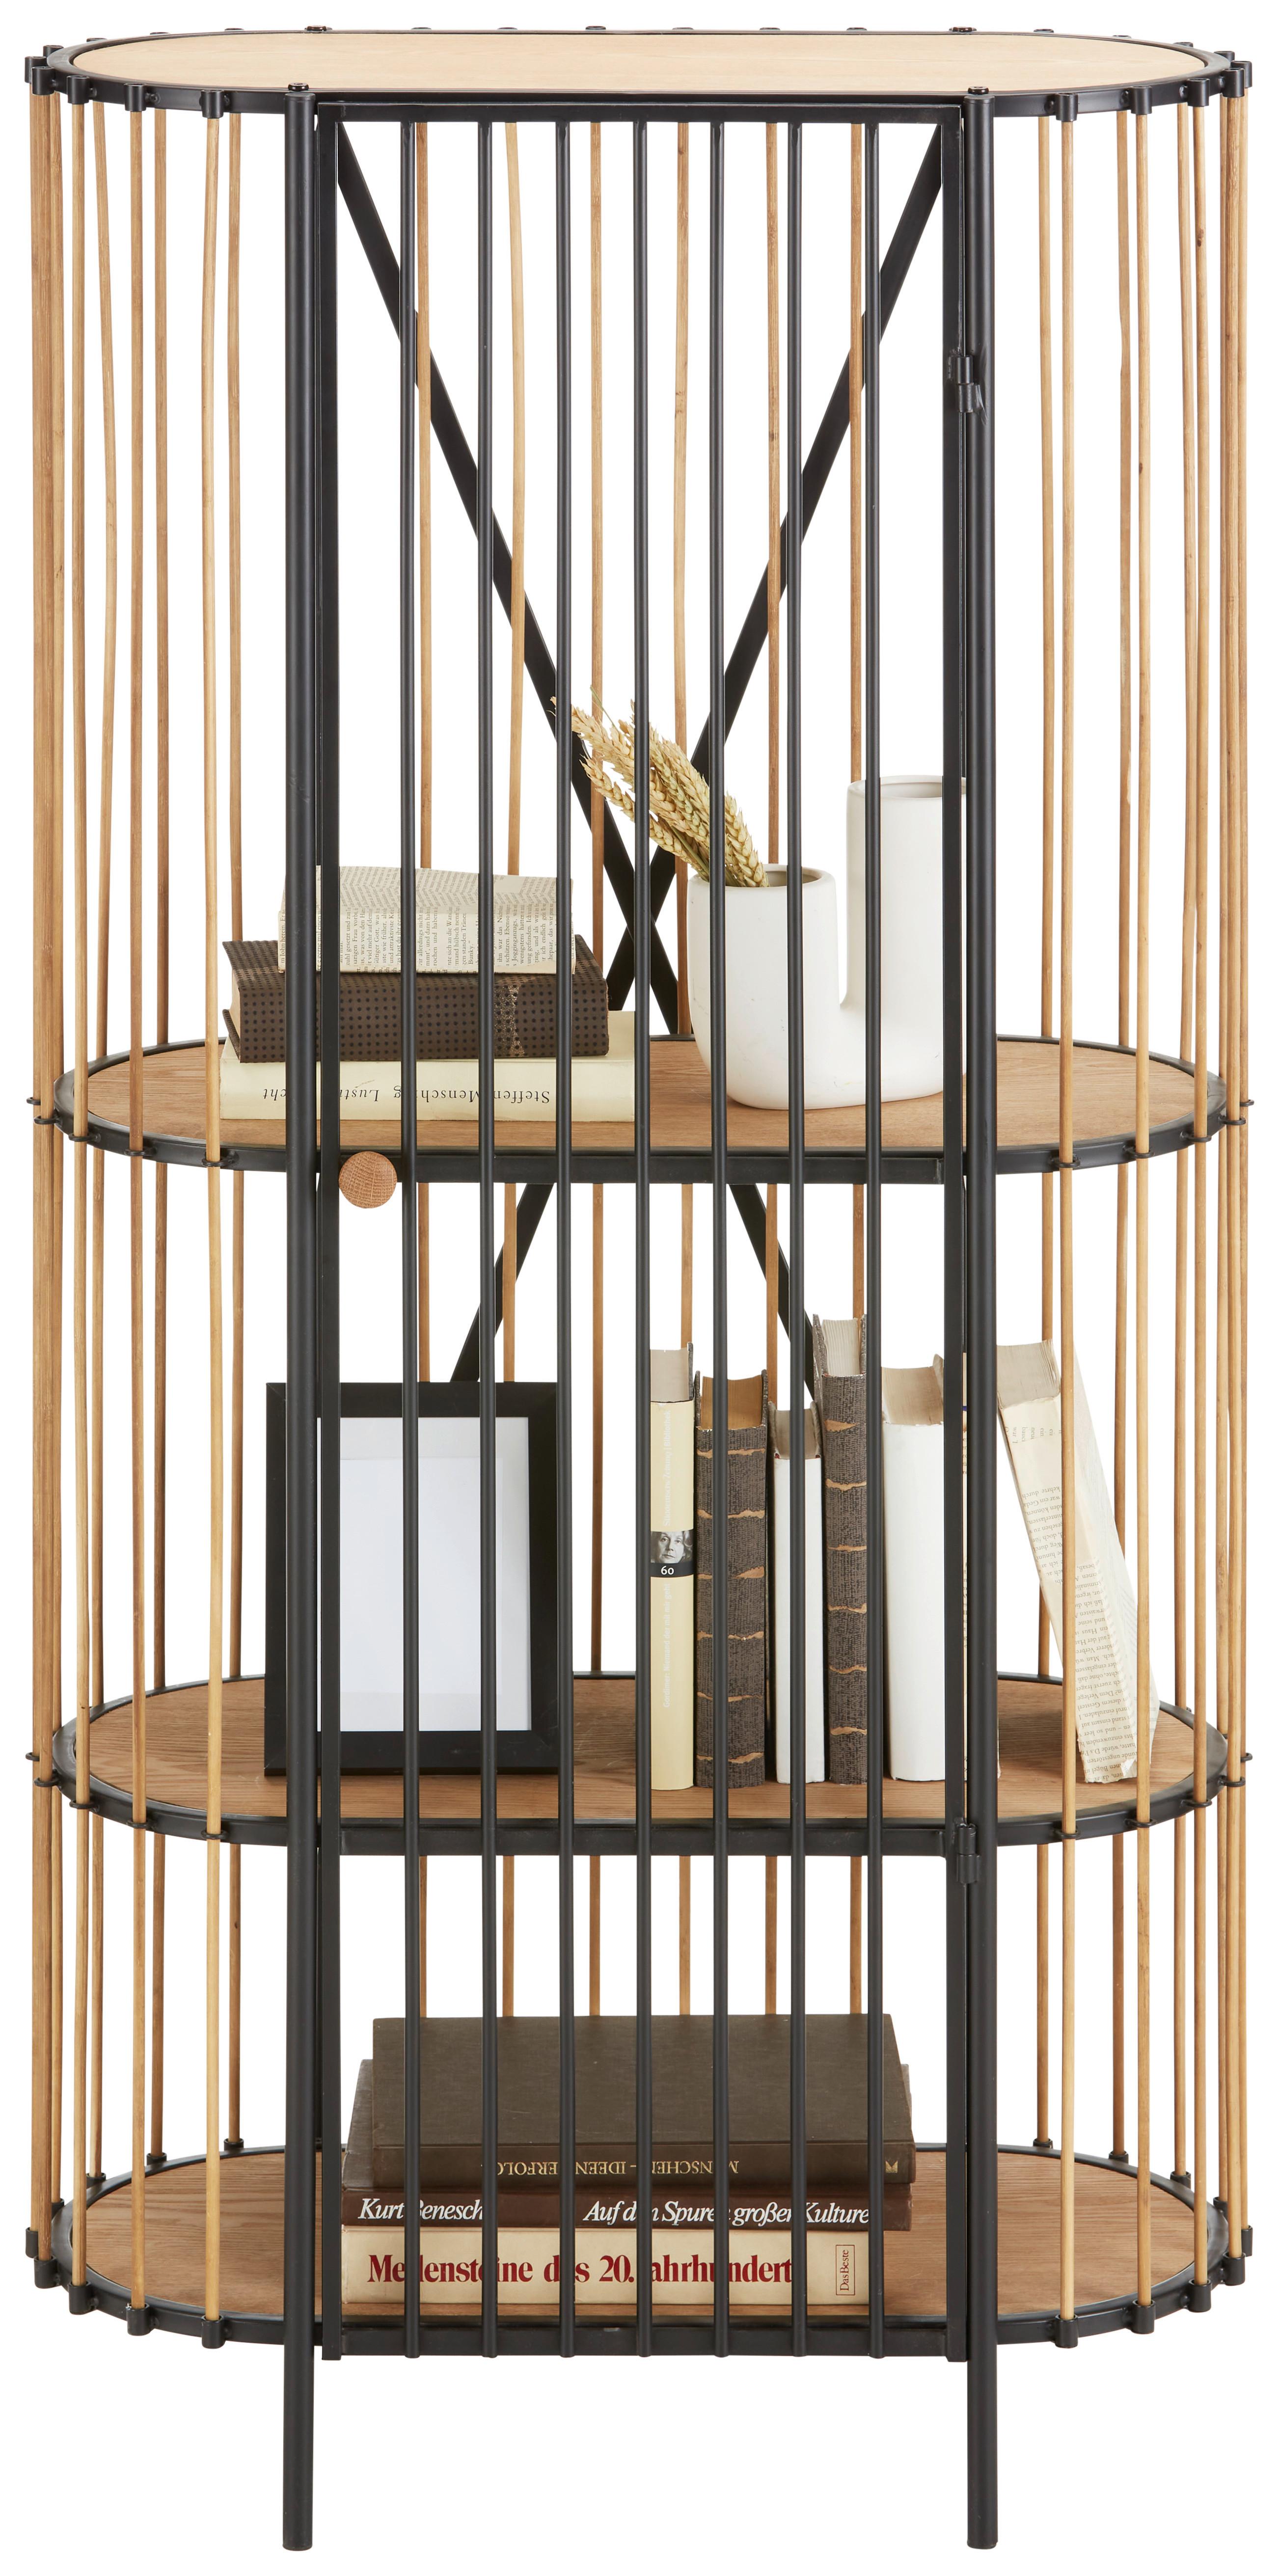 Regál Bamboo - černá/přírodní barvy, Moderní, kov/dřevo (67/132/32cm) - Premium Living